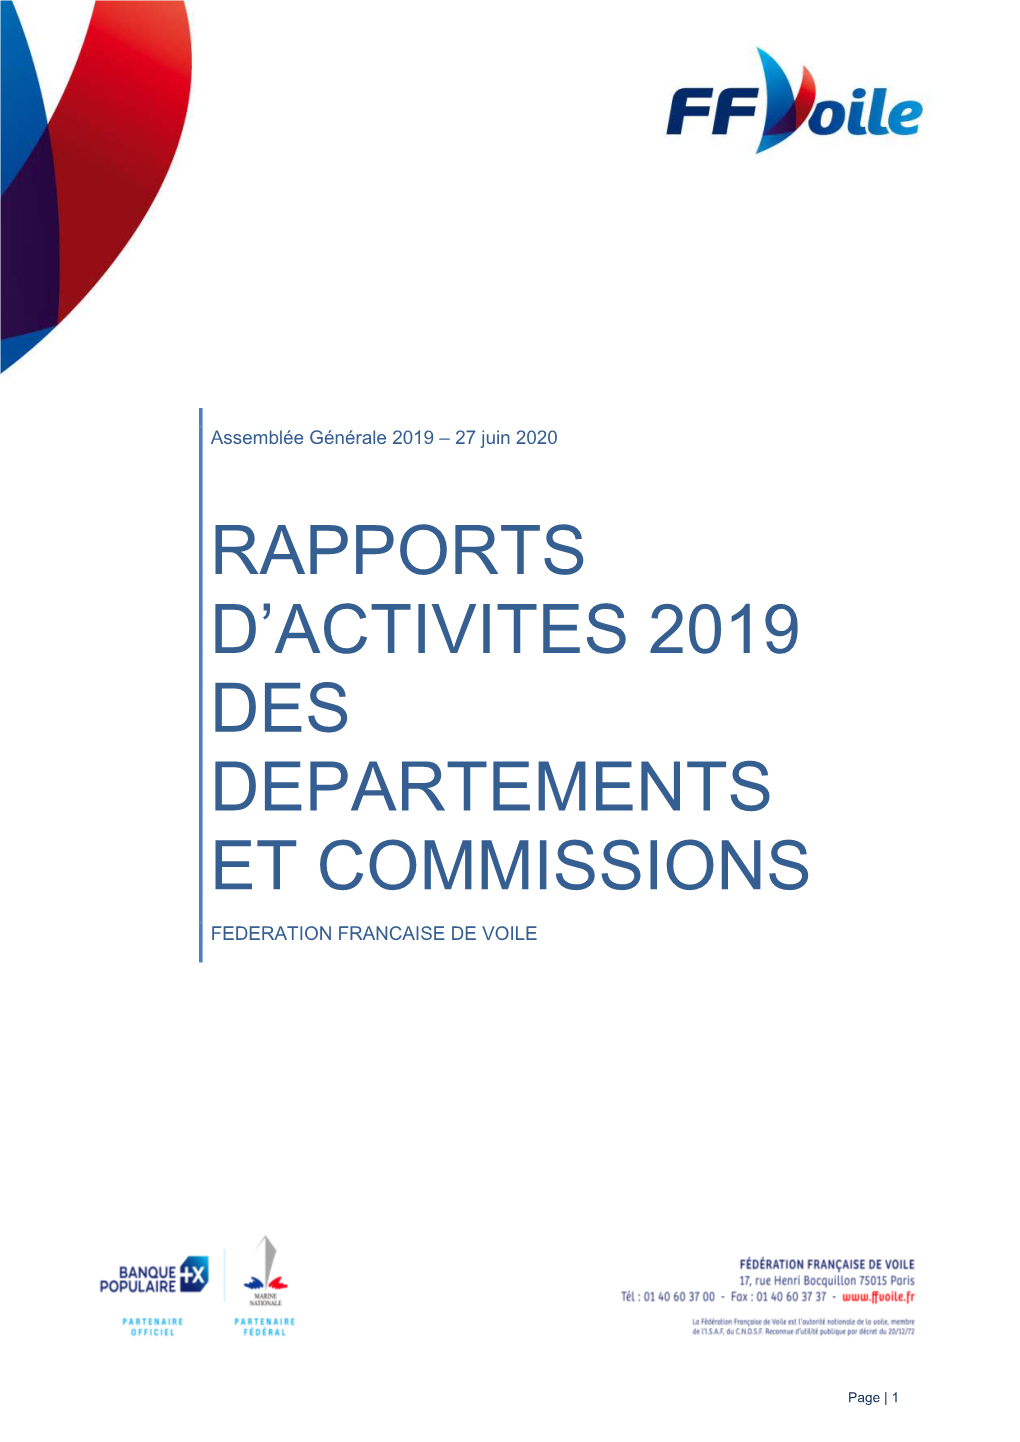 Rapports D'activites 2019 Des Departements Et Commissions